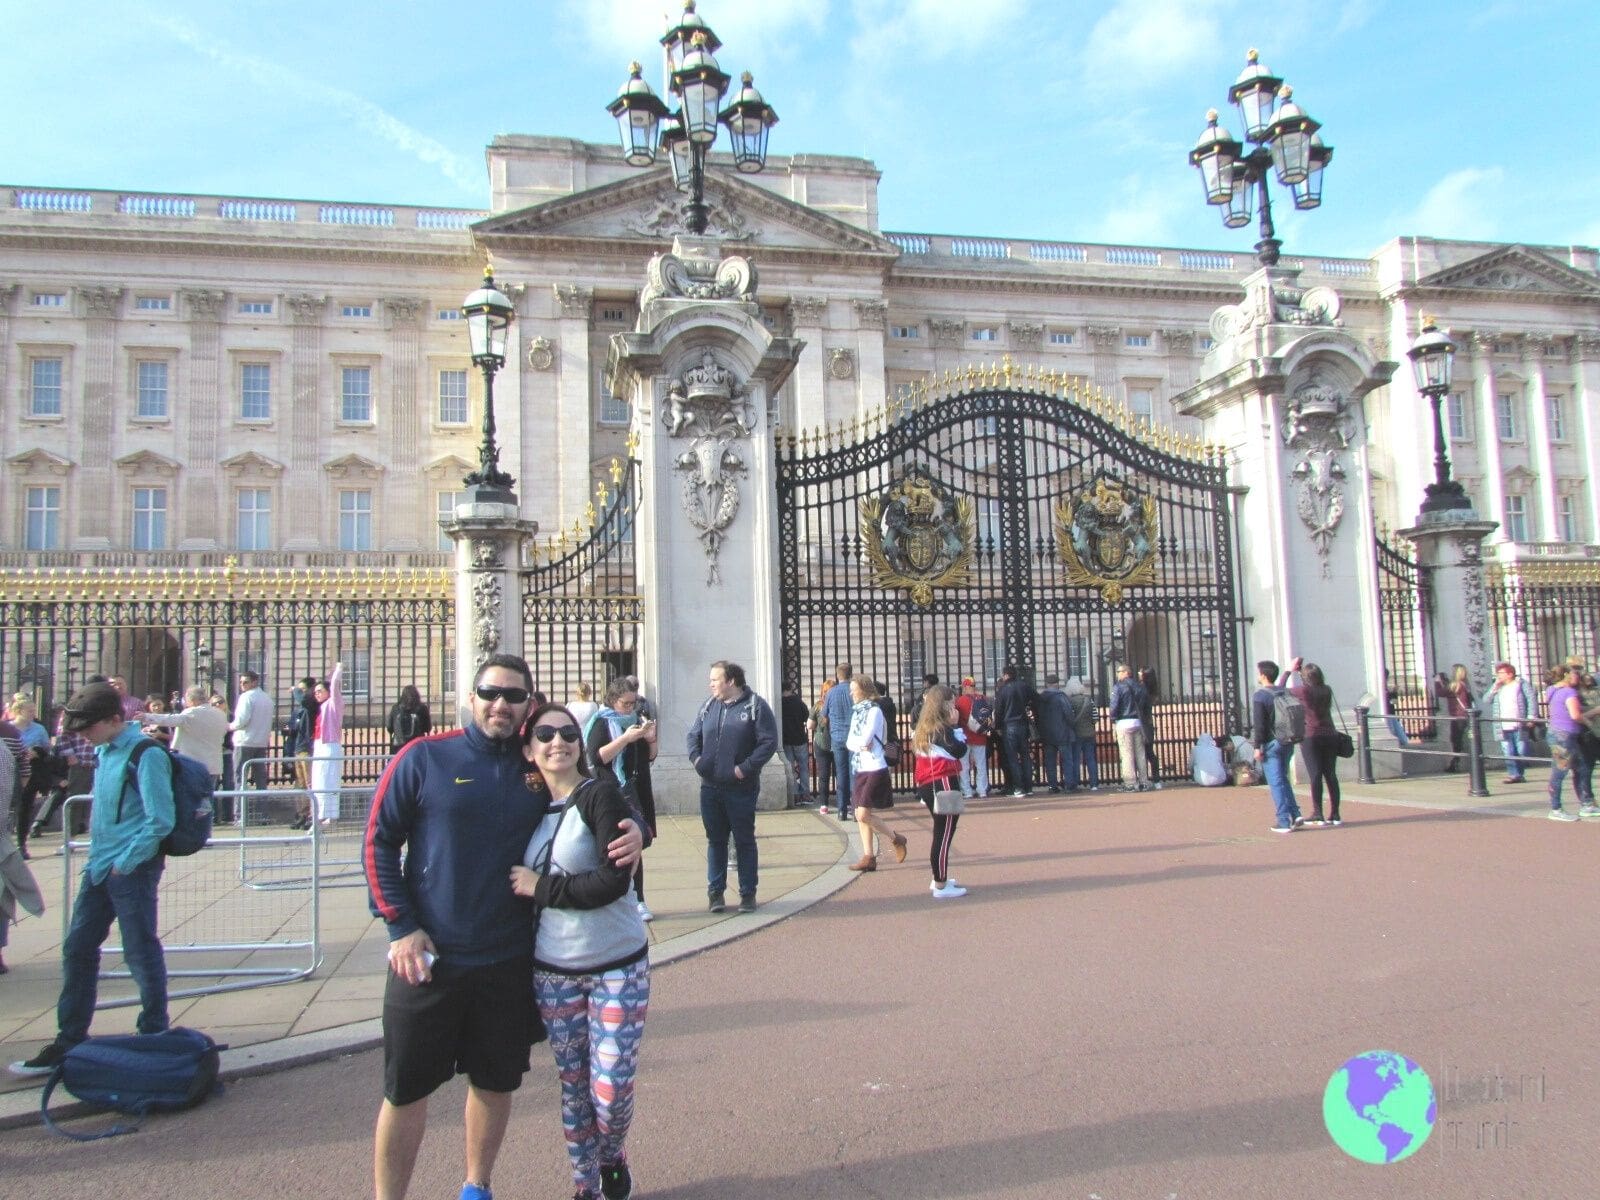 Palacio de Buckinham - Escala en Londres - Desde mi mundo Blog de viajes